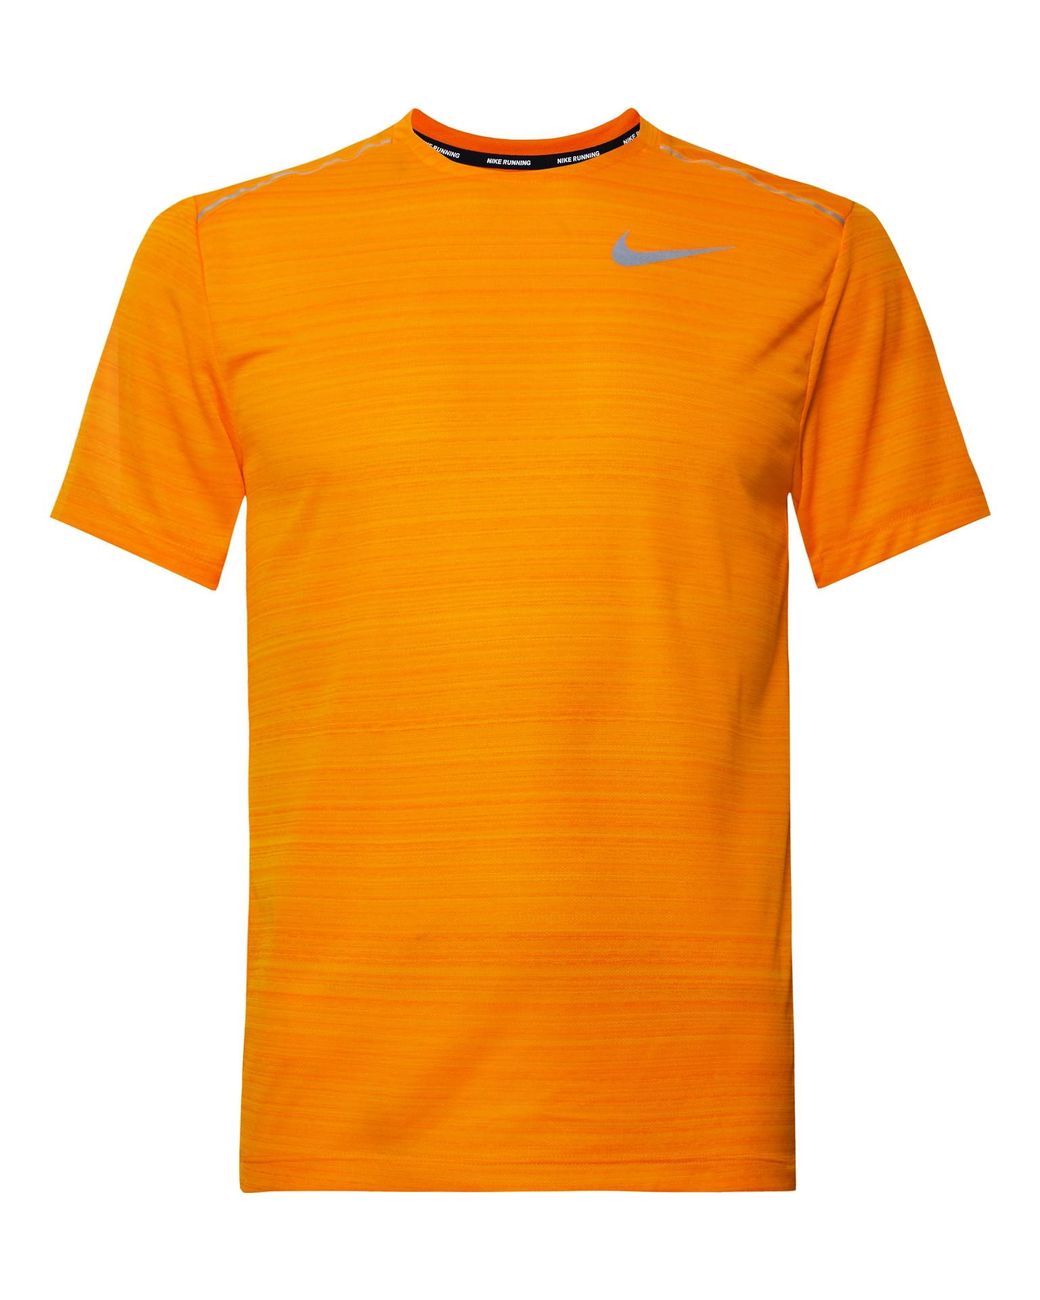 Nike Breathe Dri-fit Mesh T-shirt Orange for | Lyst UK